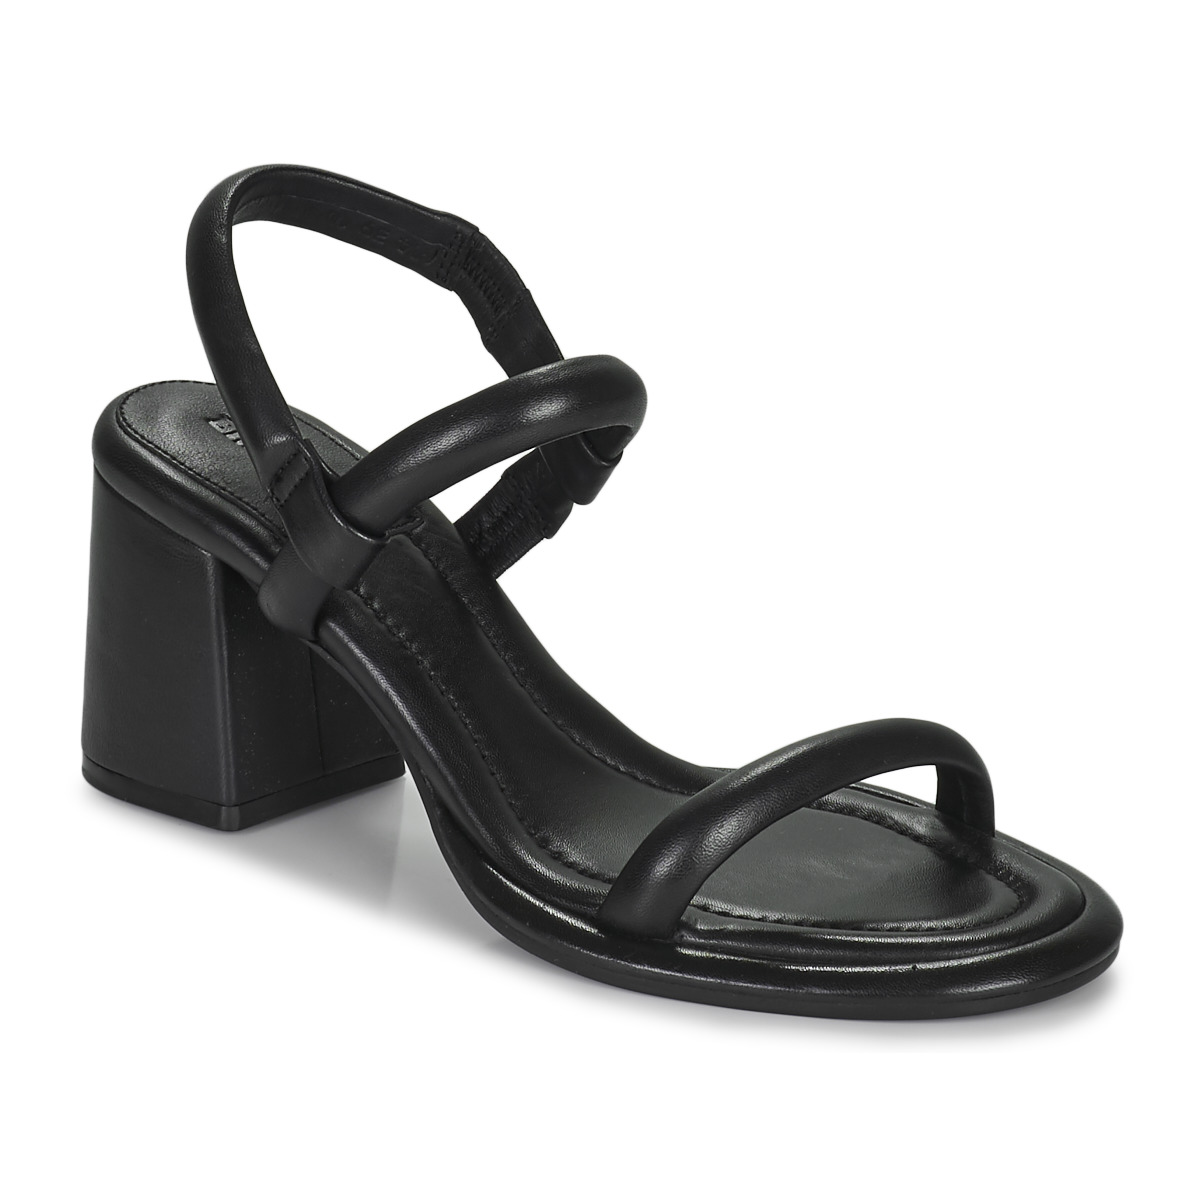 Chaussures Femme Sandales et Nu-pieds Bronx NEW-JAGGER Noir